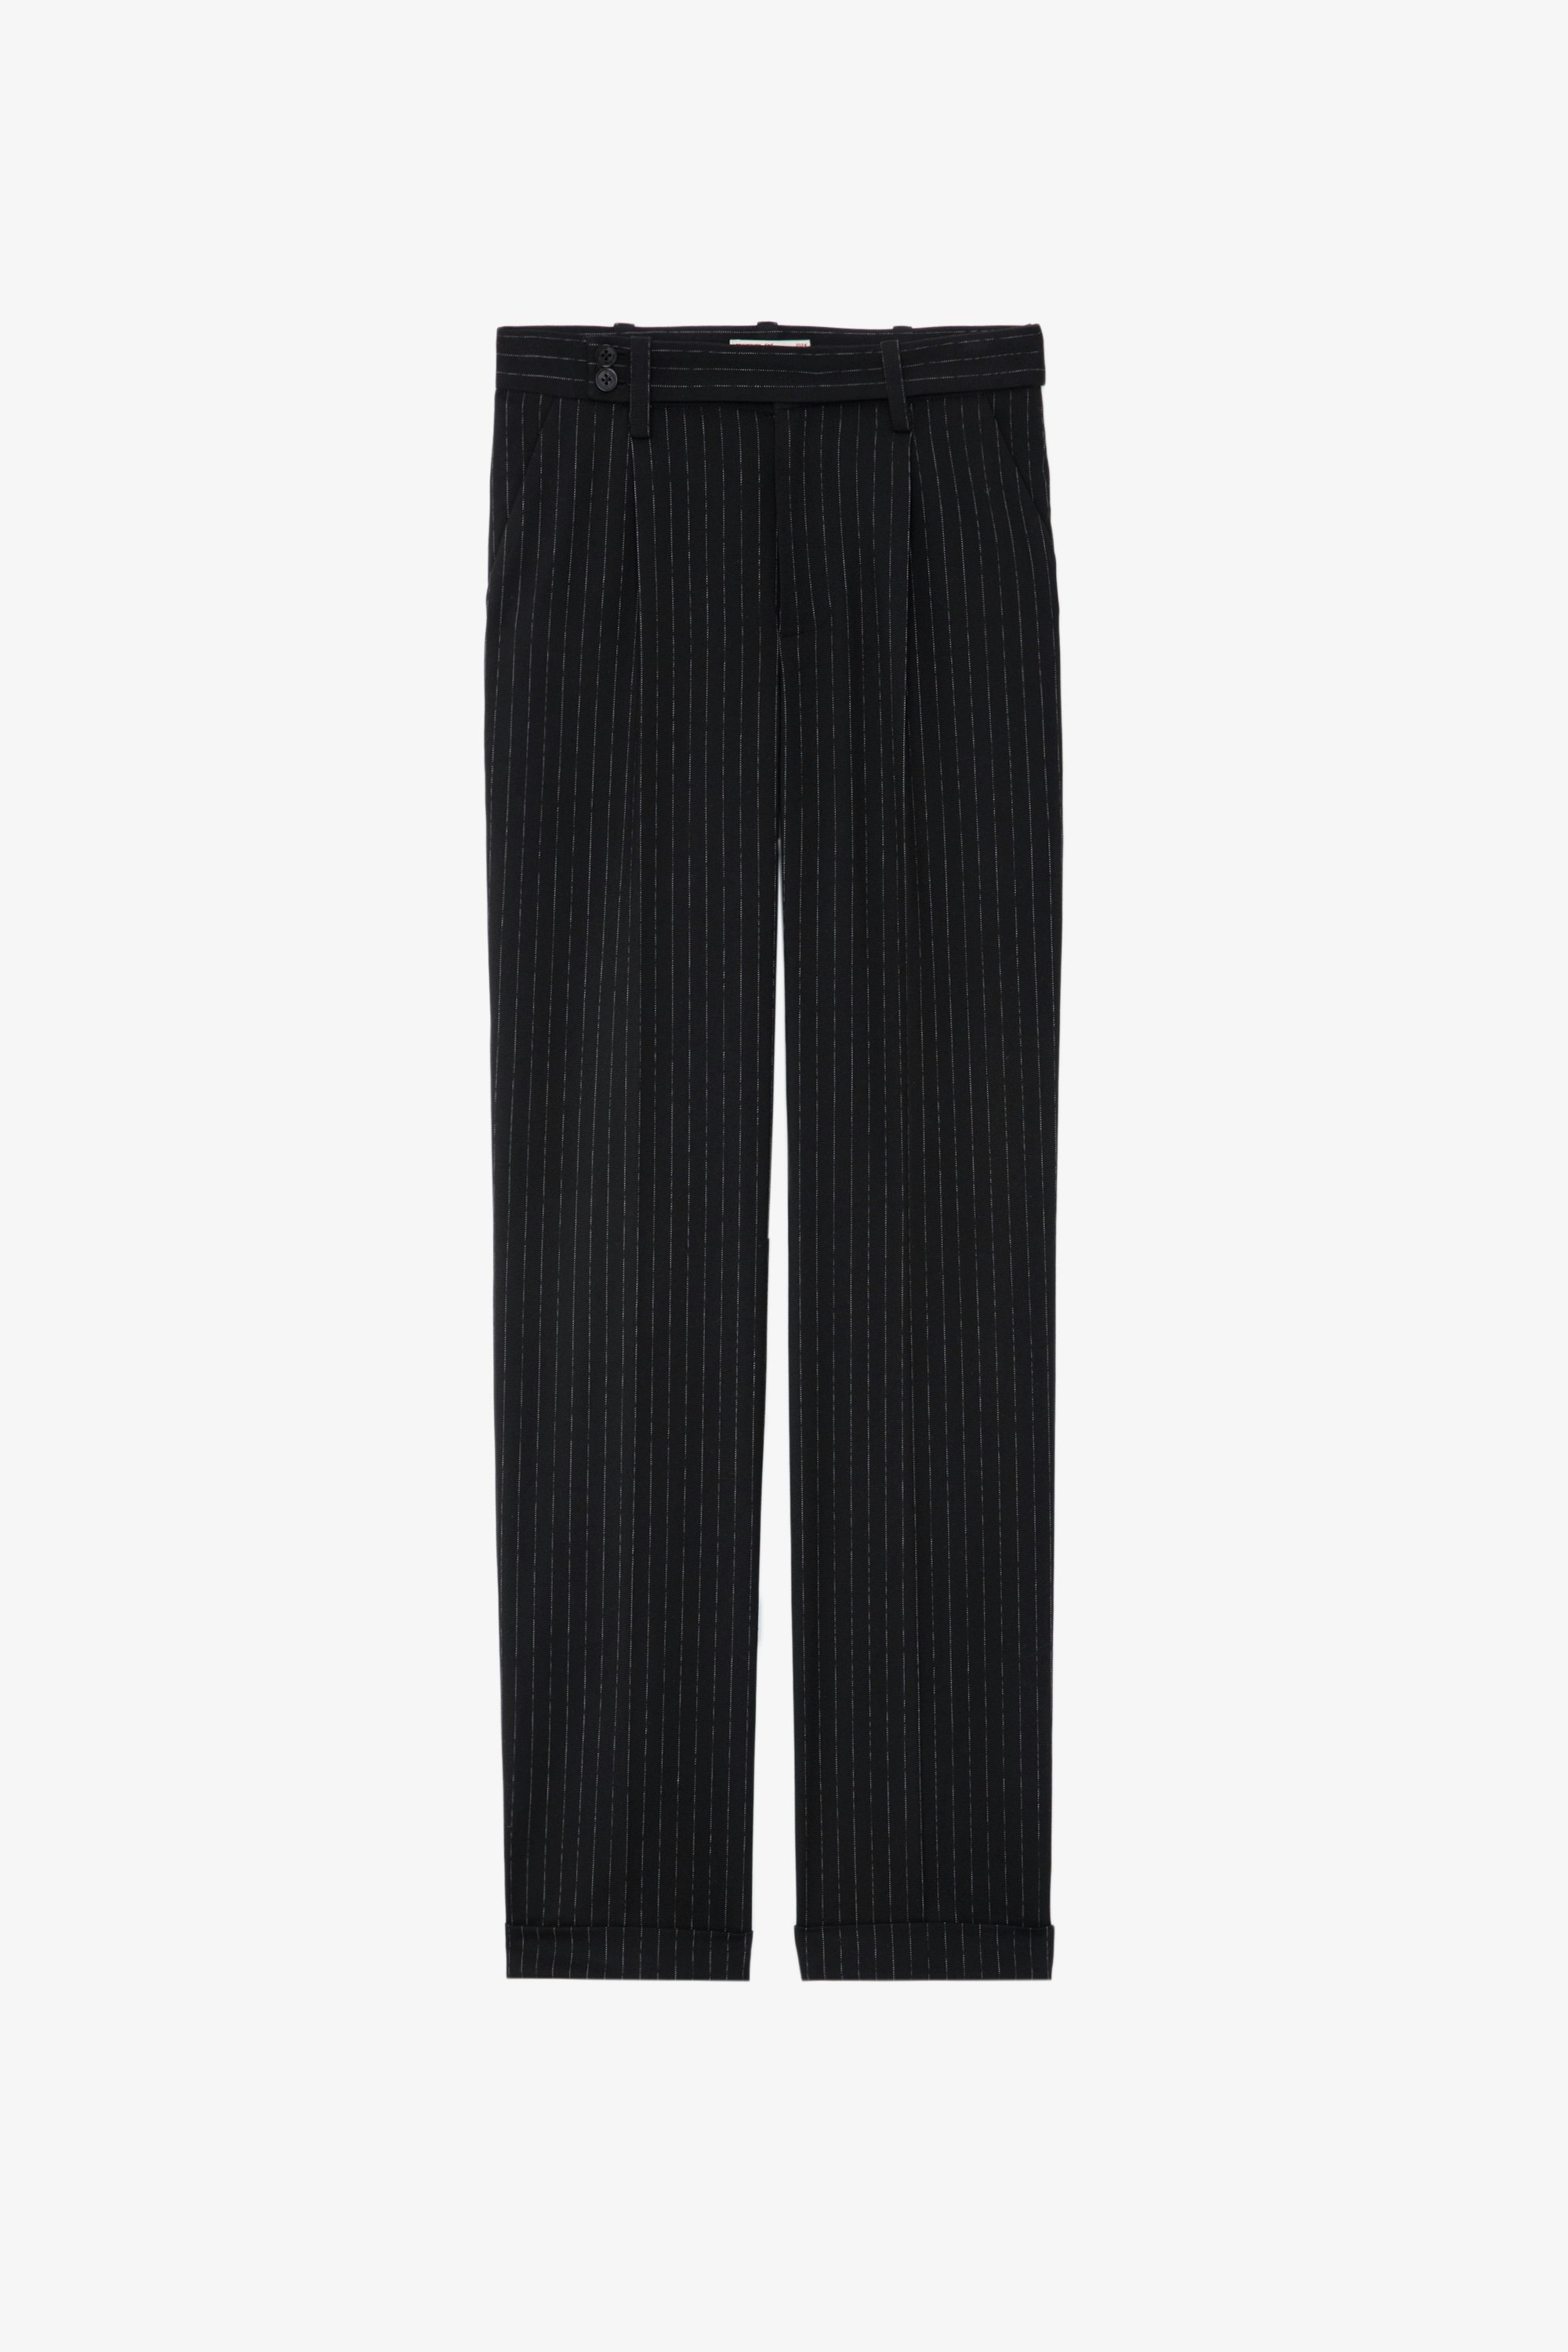 Hose Pura - Weite, schwarze Anzughose mit feinen Streifen und Taschen.